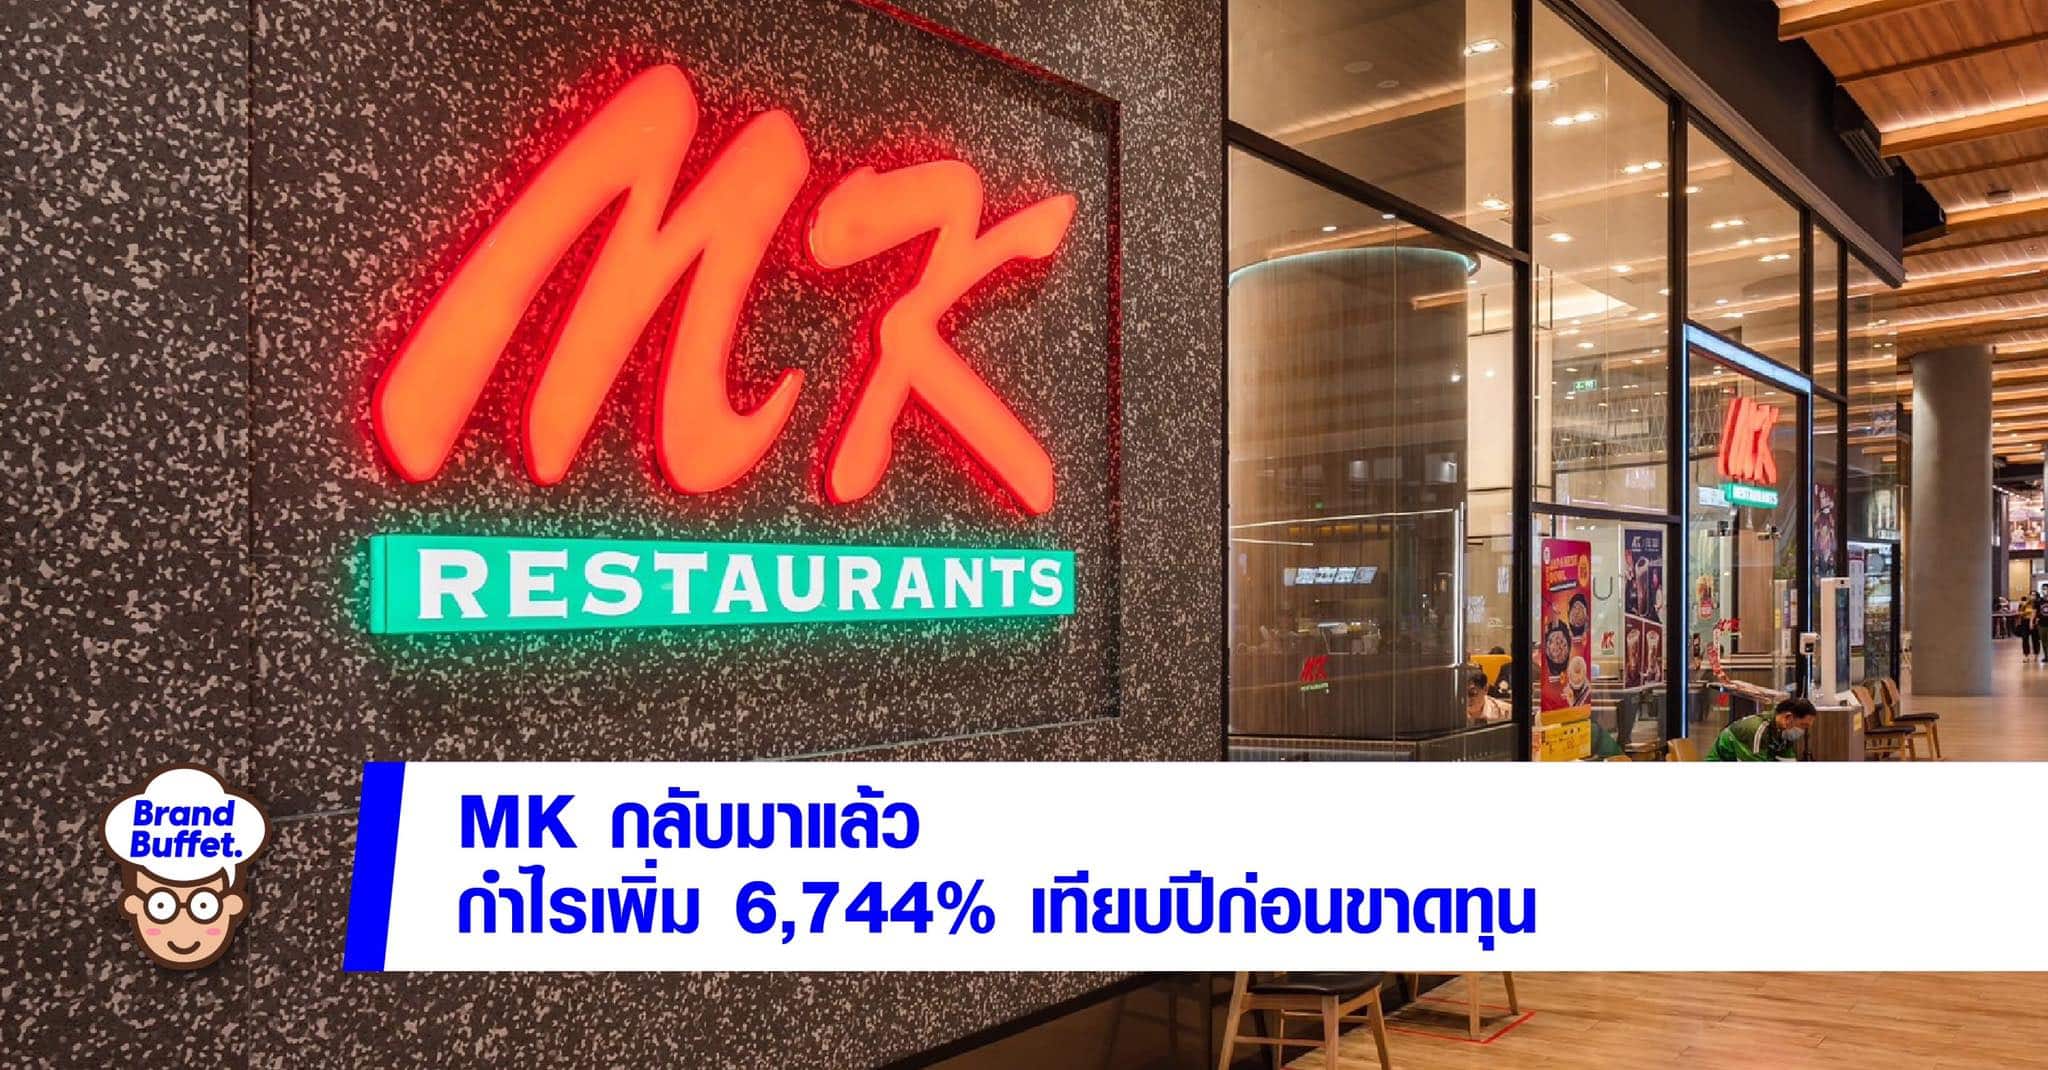 MK restaurants cover